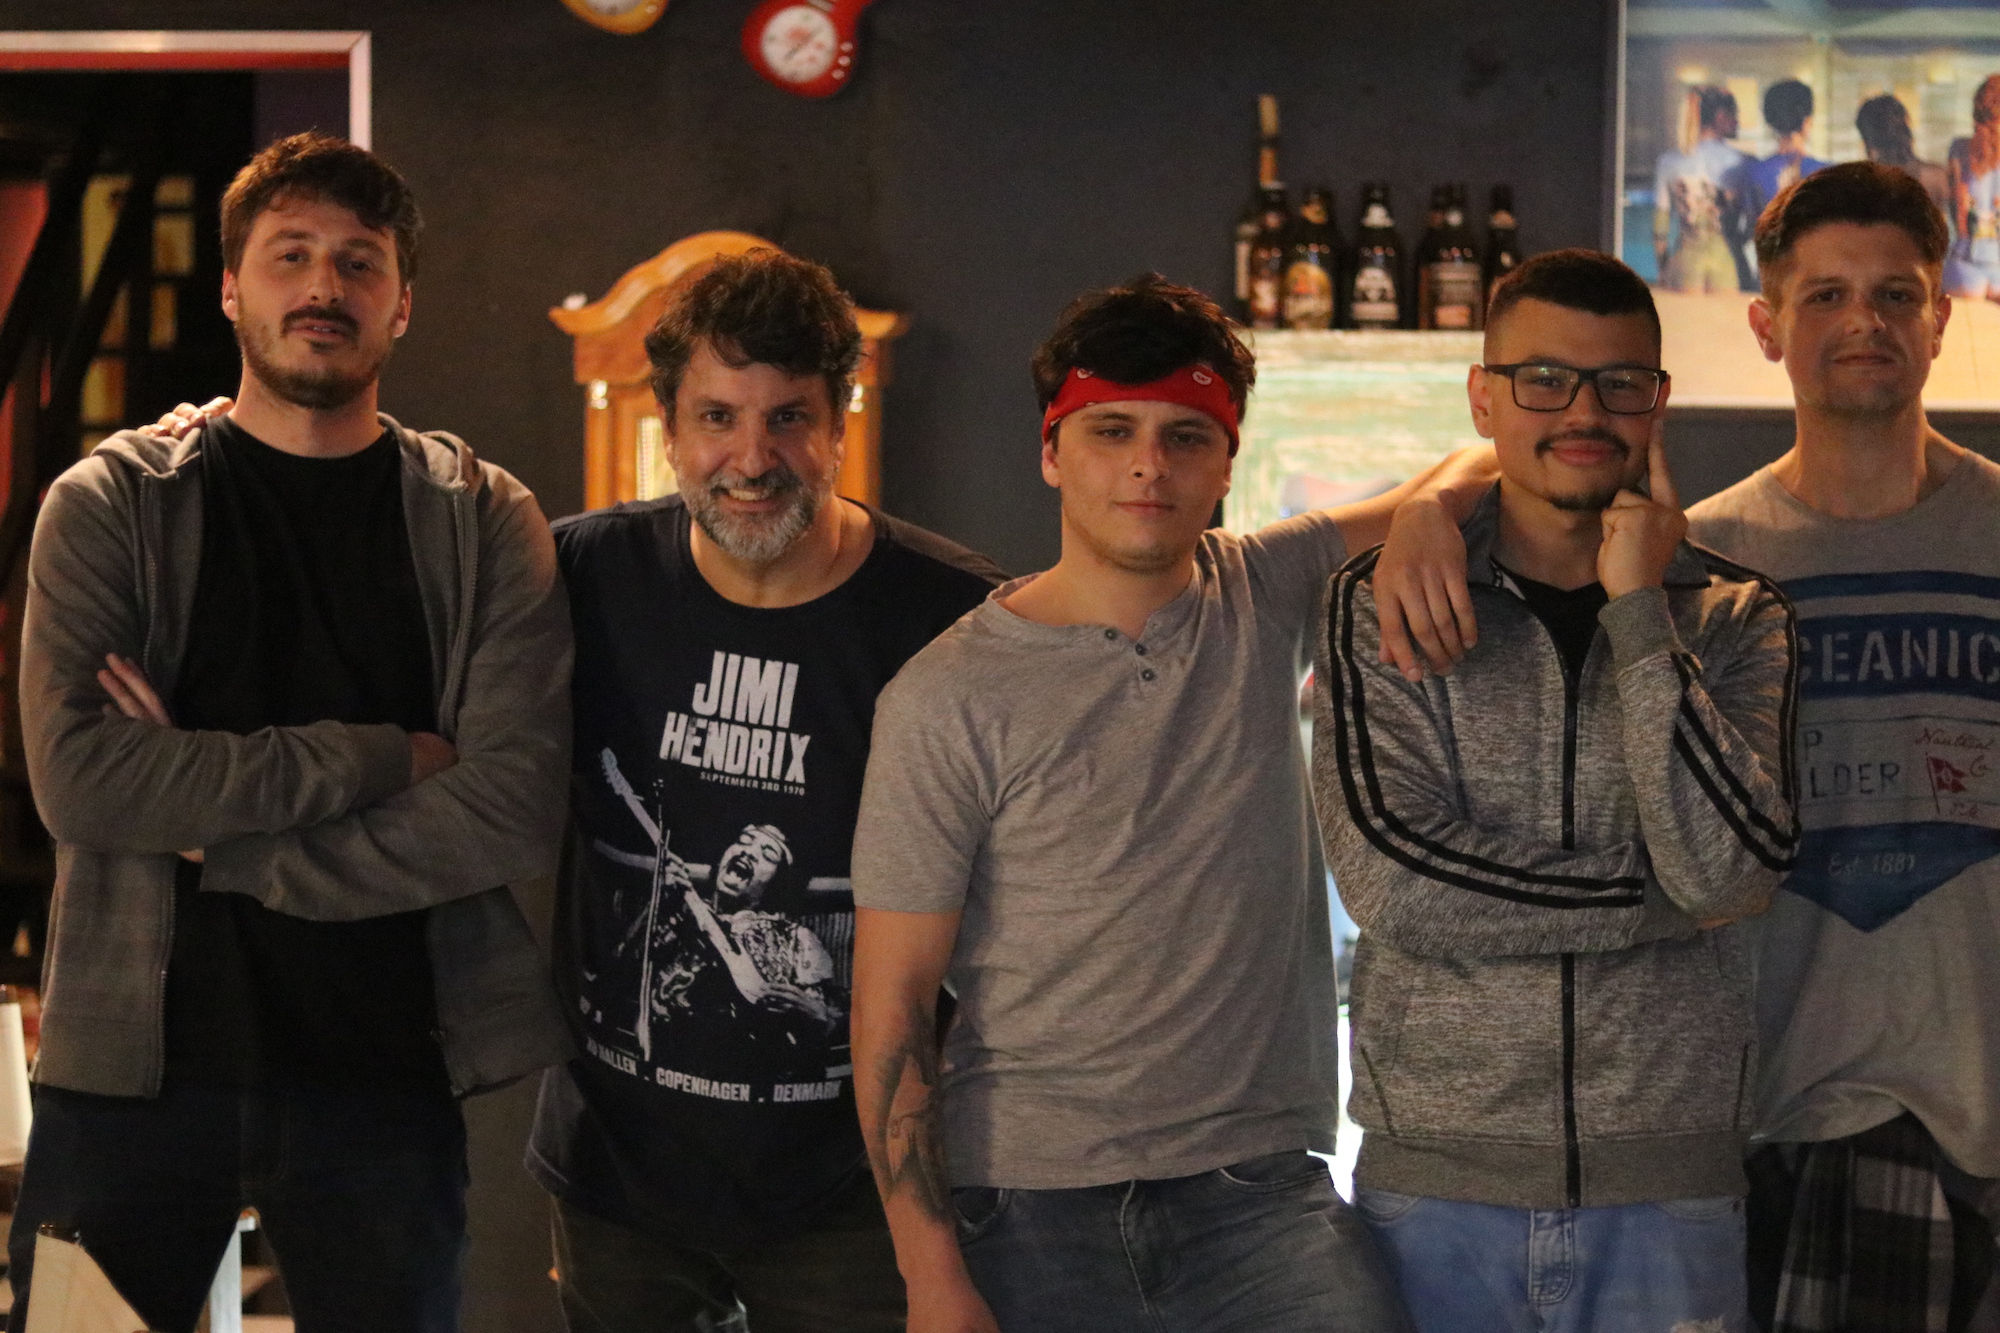 Tributo a Cazuza: cinco rapazes posam para a foto. O do meio usa um lenço caracterizando-se como Cazuza. Atrás vê-se um ambiente de bar.